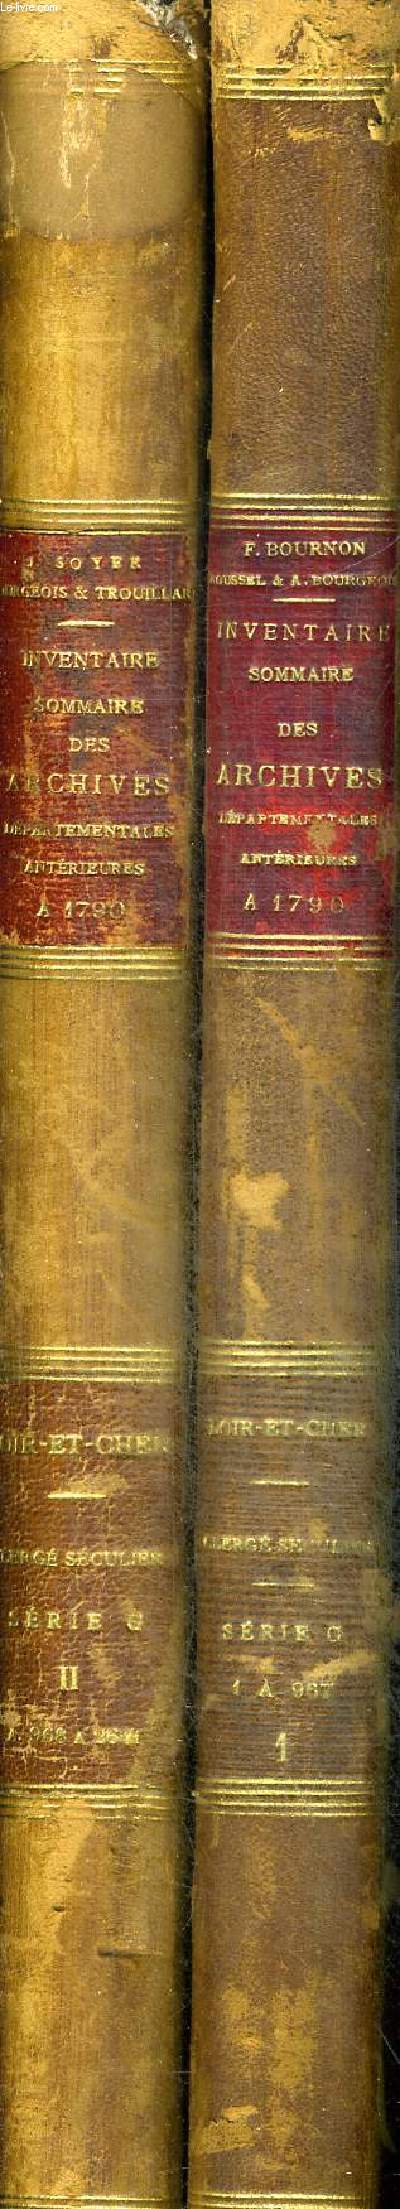 INVENTAIRE SOMMAIRE DES ARCHIVES DEPARTEMENTALES - ANTERIEURES A 1790 - LOIR ET CHER - CLERGE SEGULIER - SERIE G - 2 VOLUMES - TOMES 1 ET 2